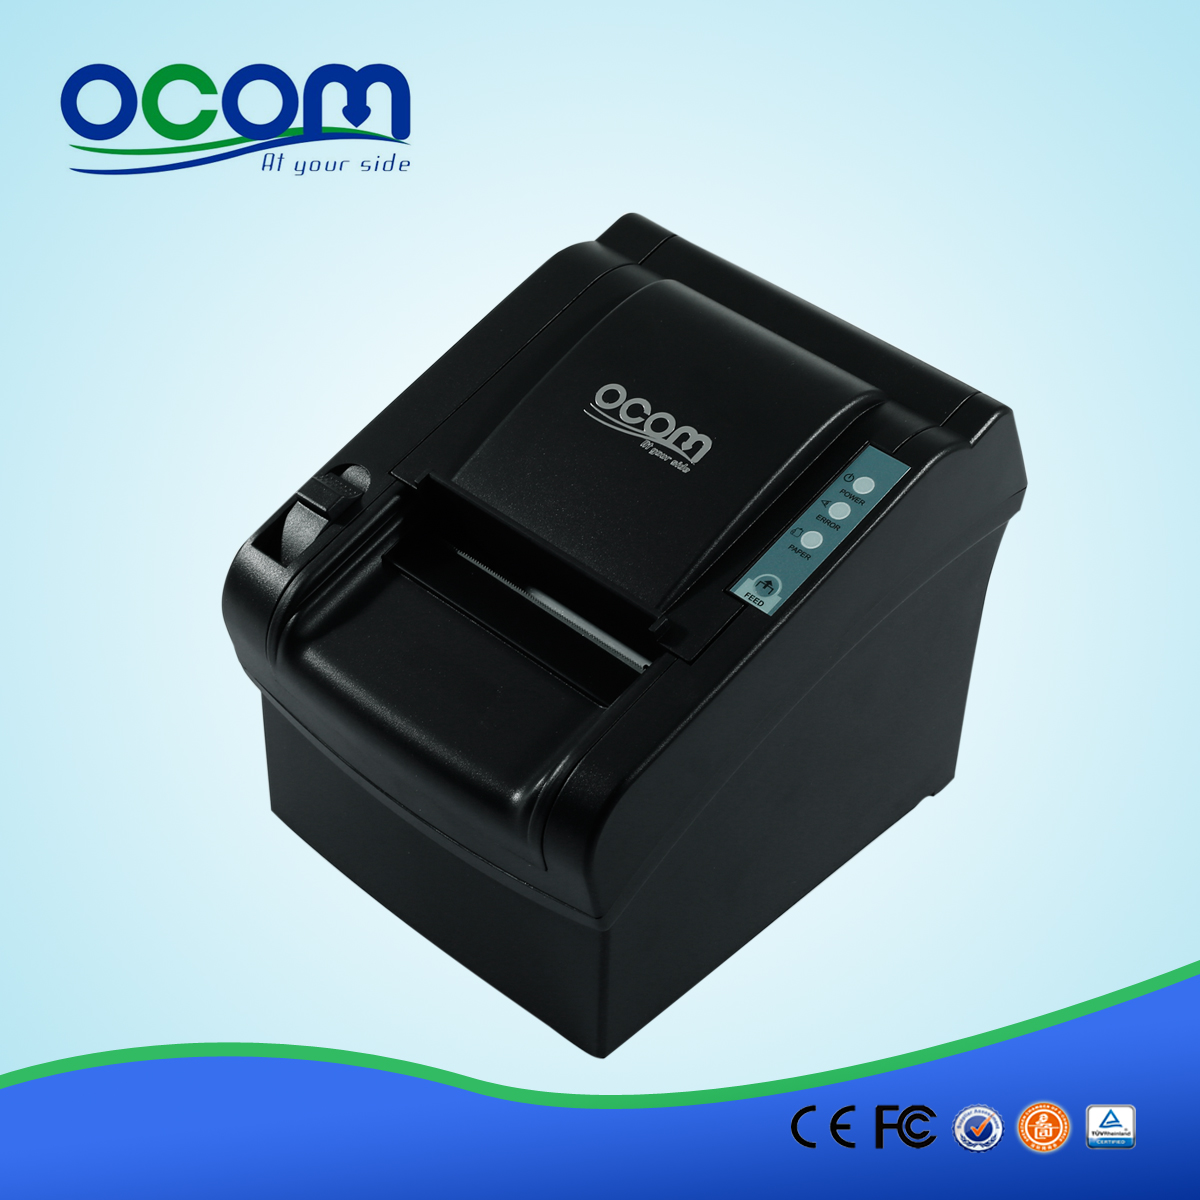 80mm classique imprimante ticket thermique-OCPP-802